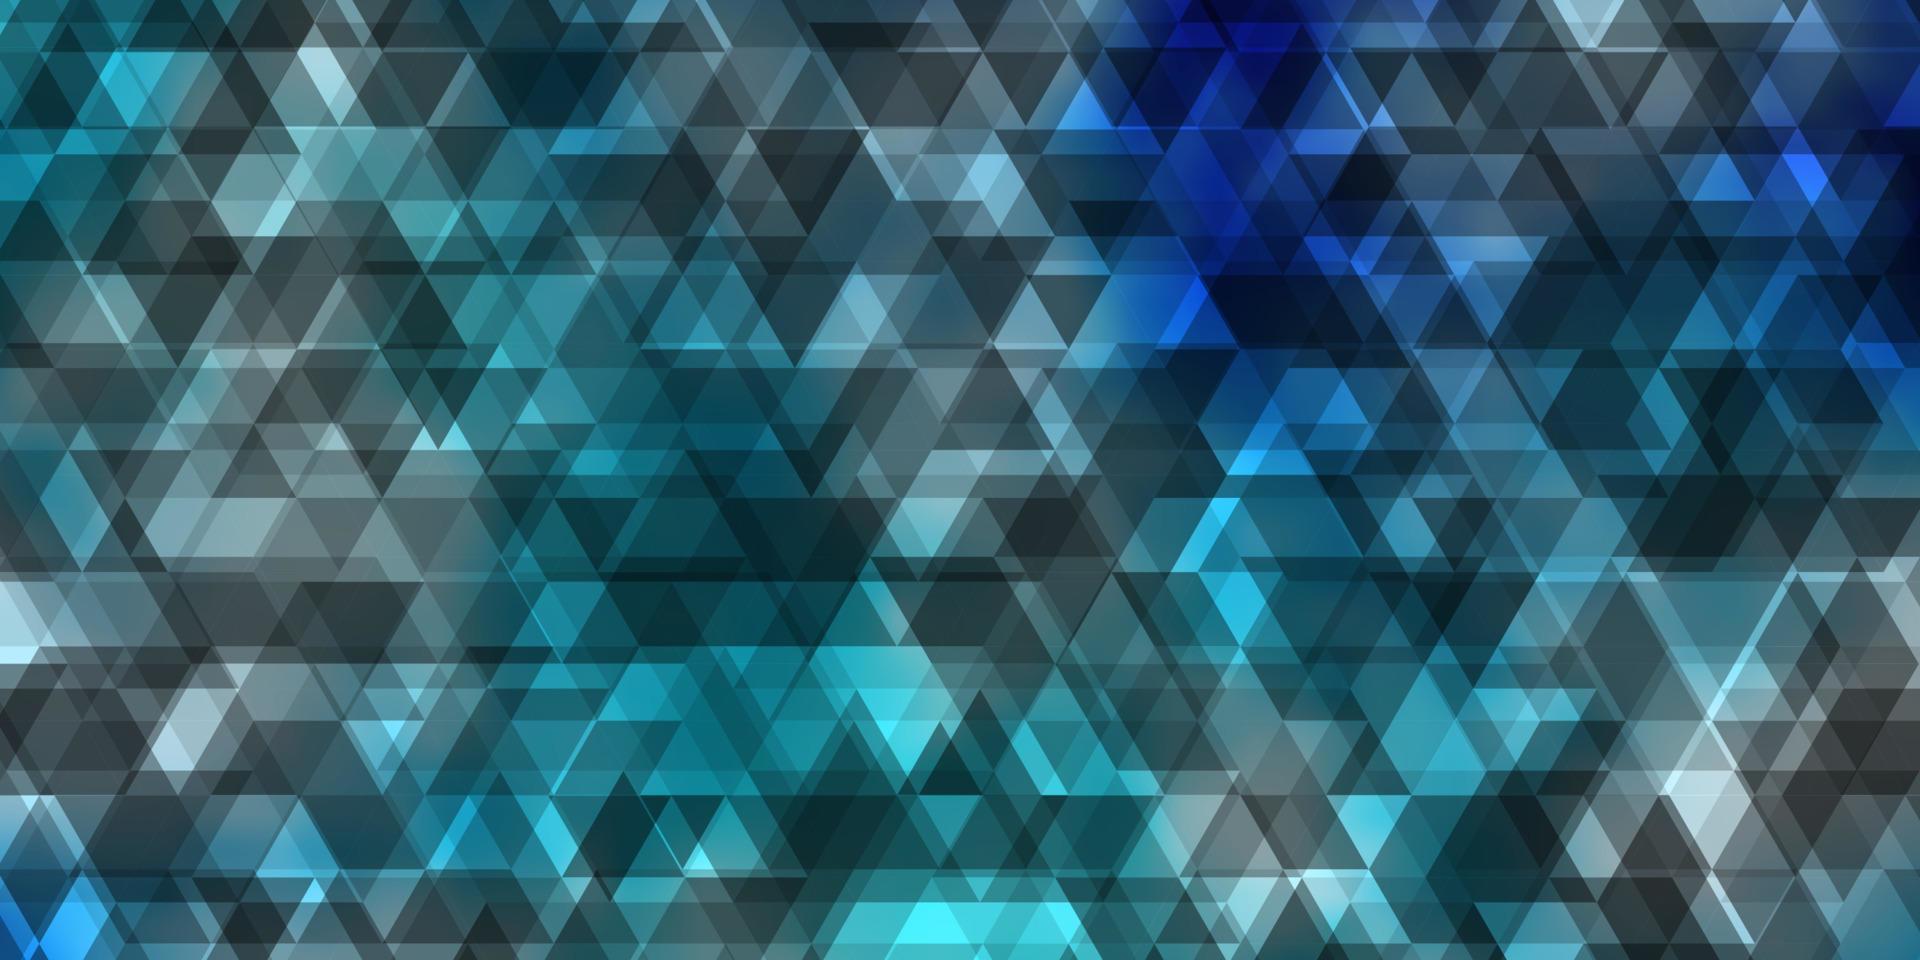 fond de vecteur bleu clair avec des lignes, des triangles.